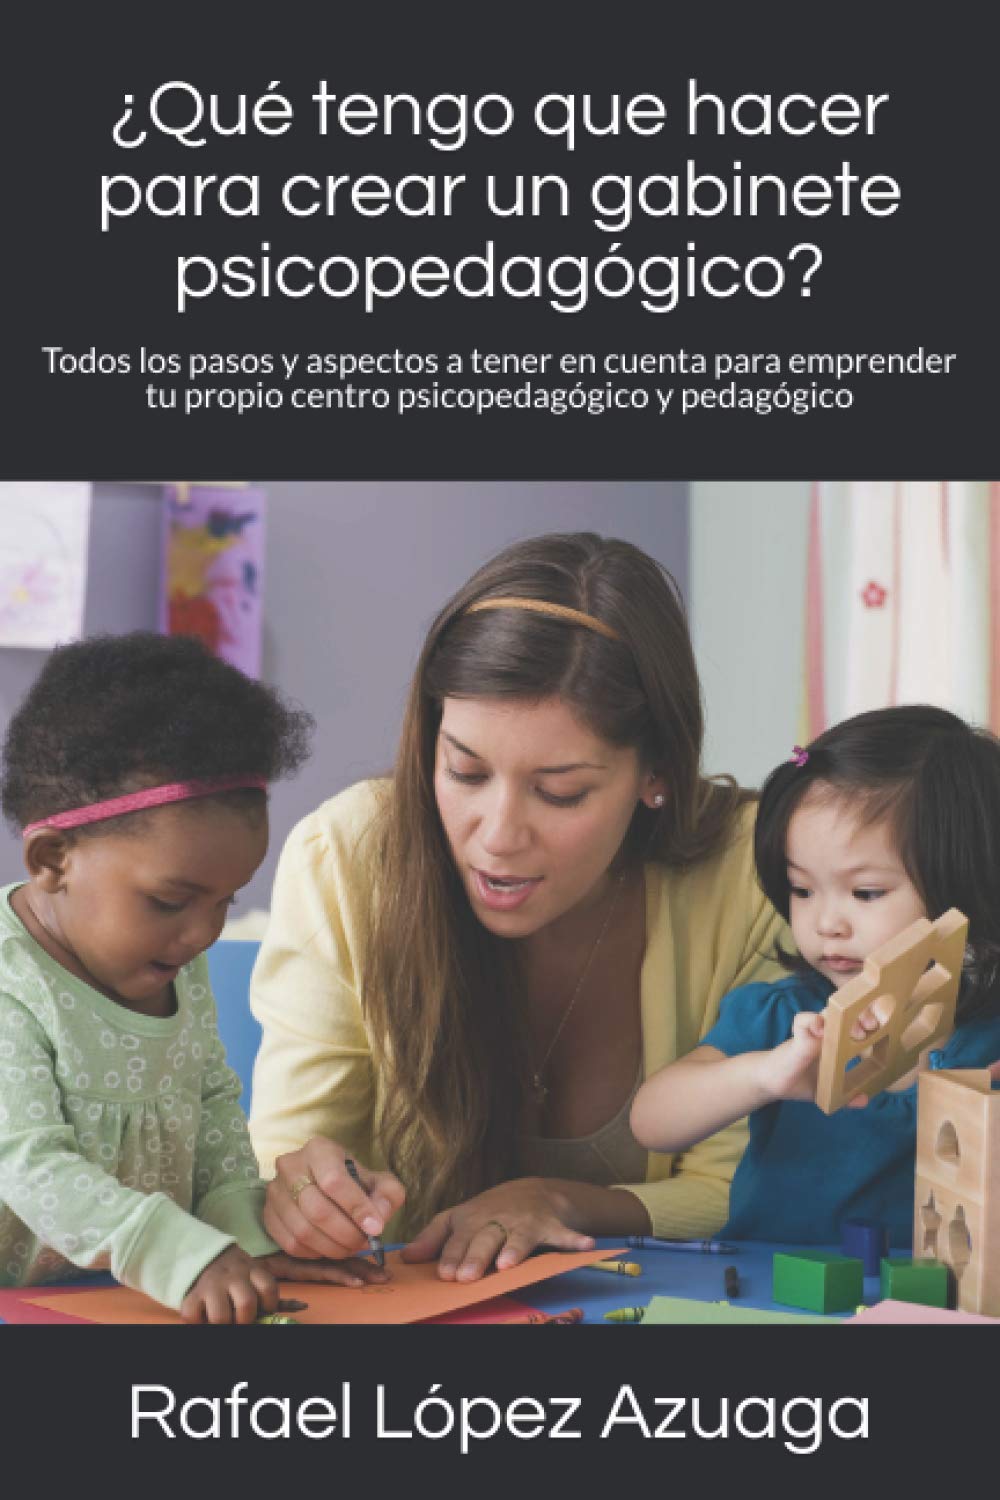 Libro sobre creación de gabinetes psicopedagógicos